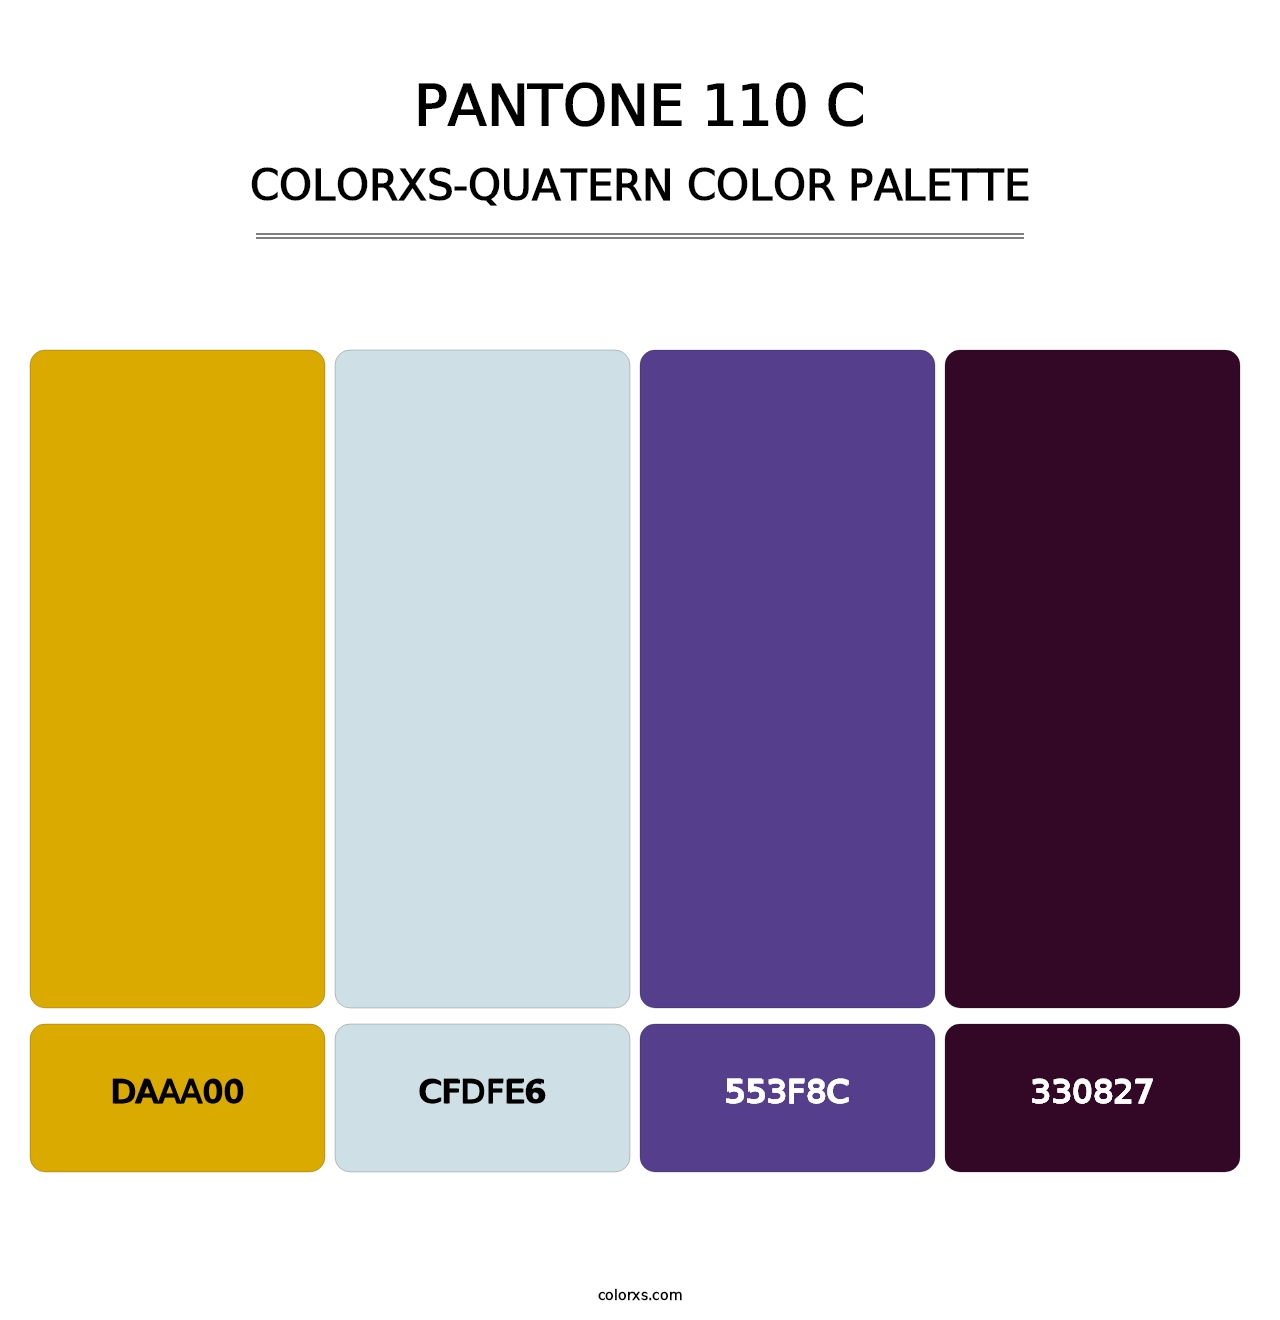 PANTONE 110 C - Colorxs Quatern Palette